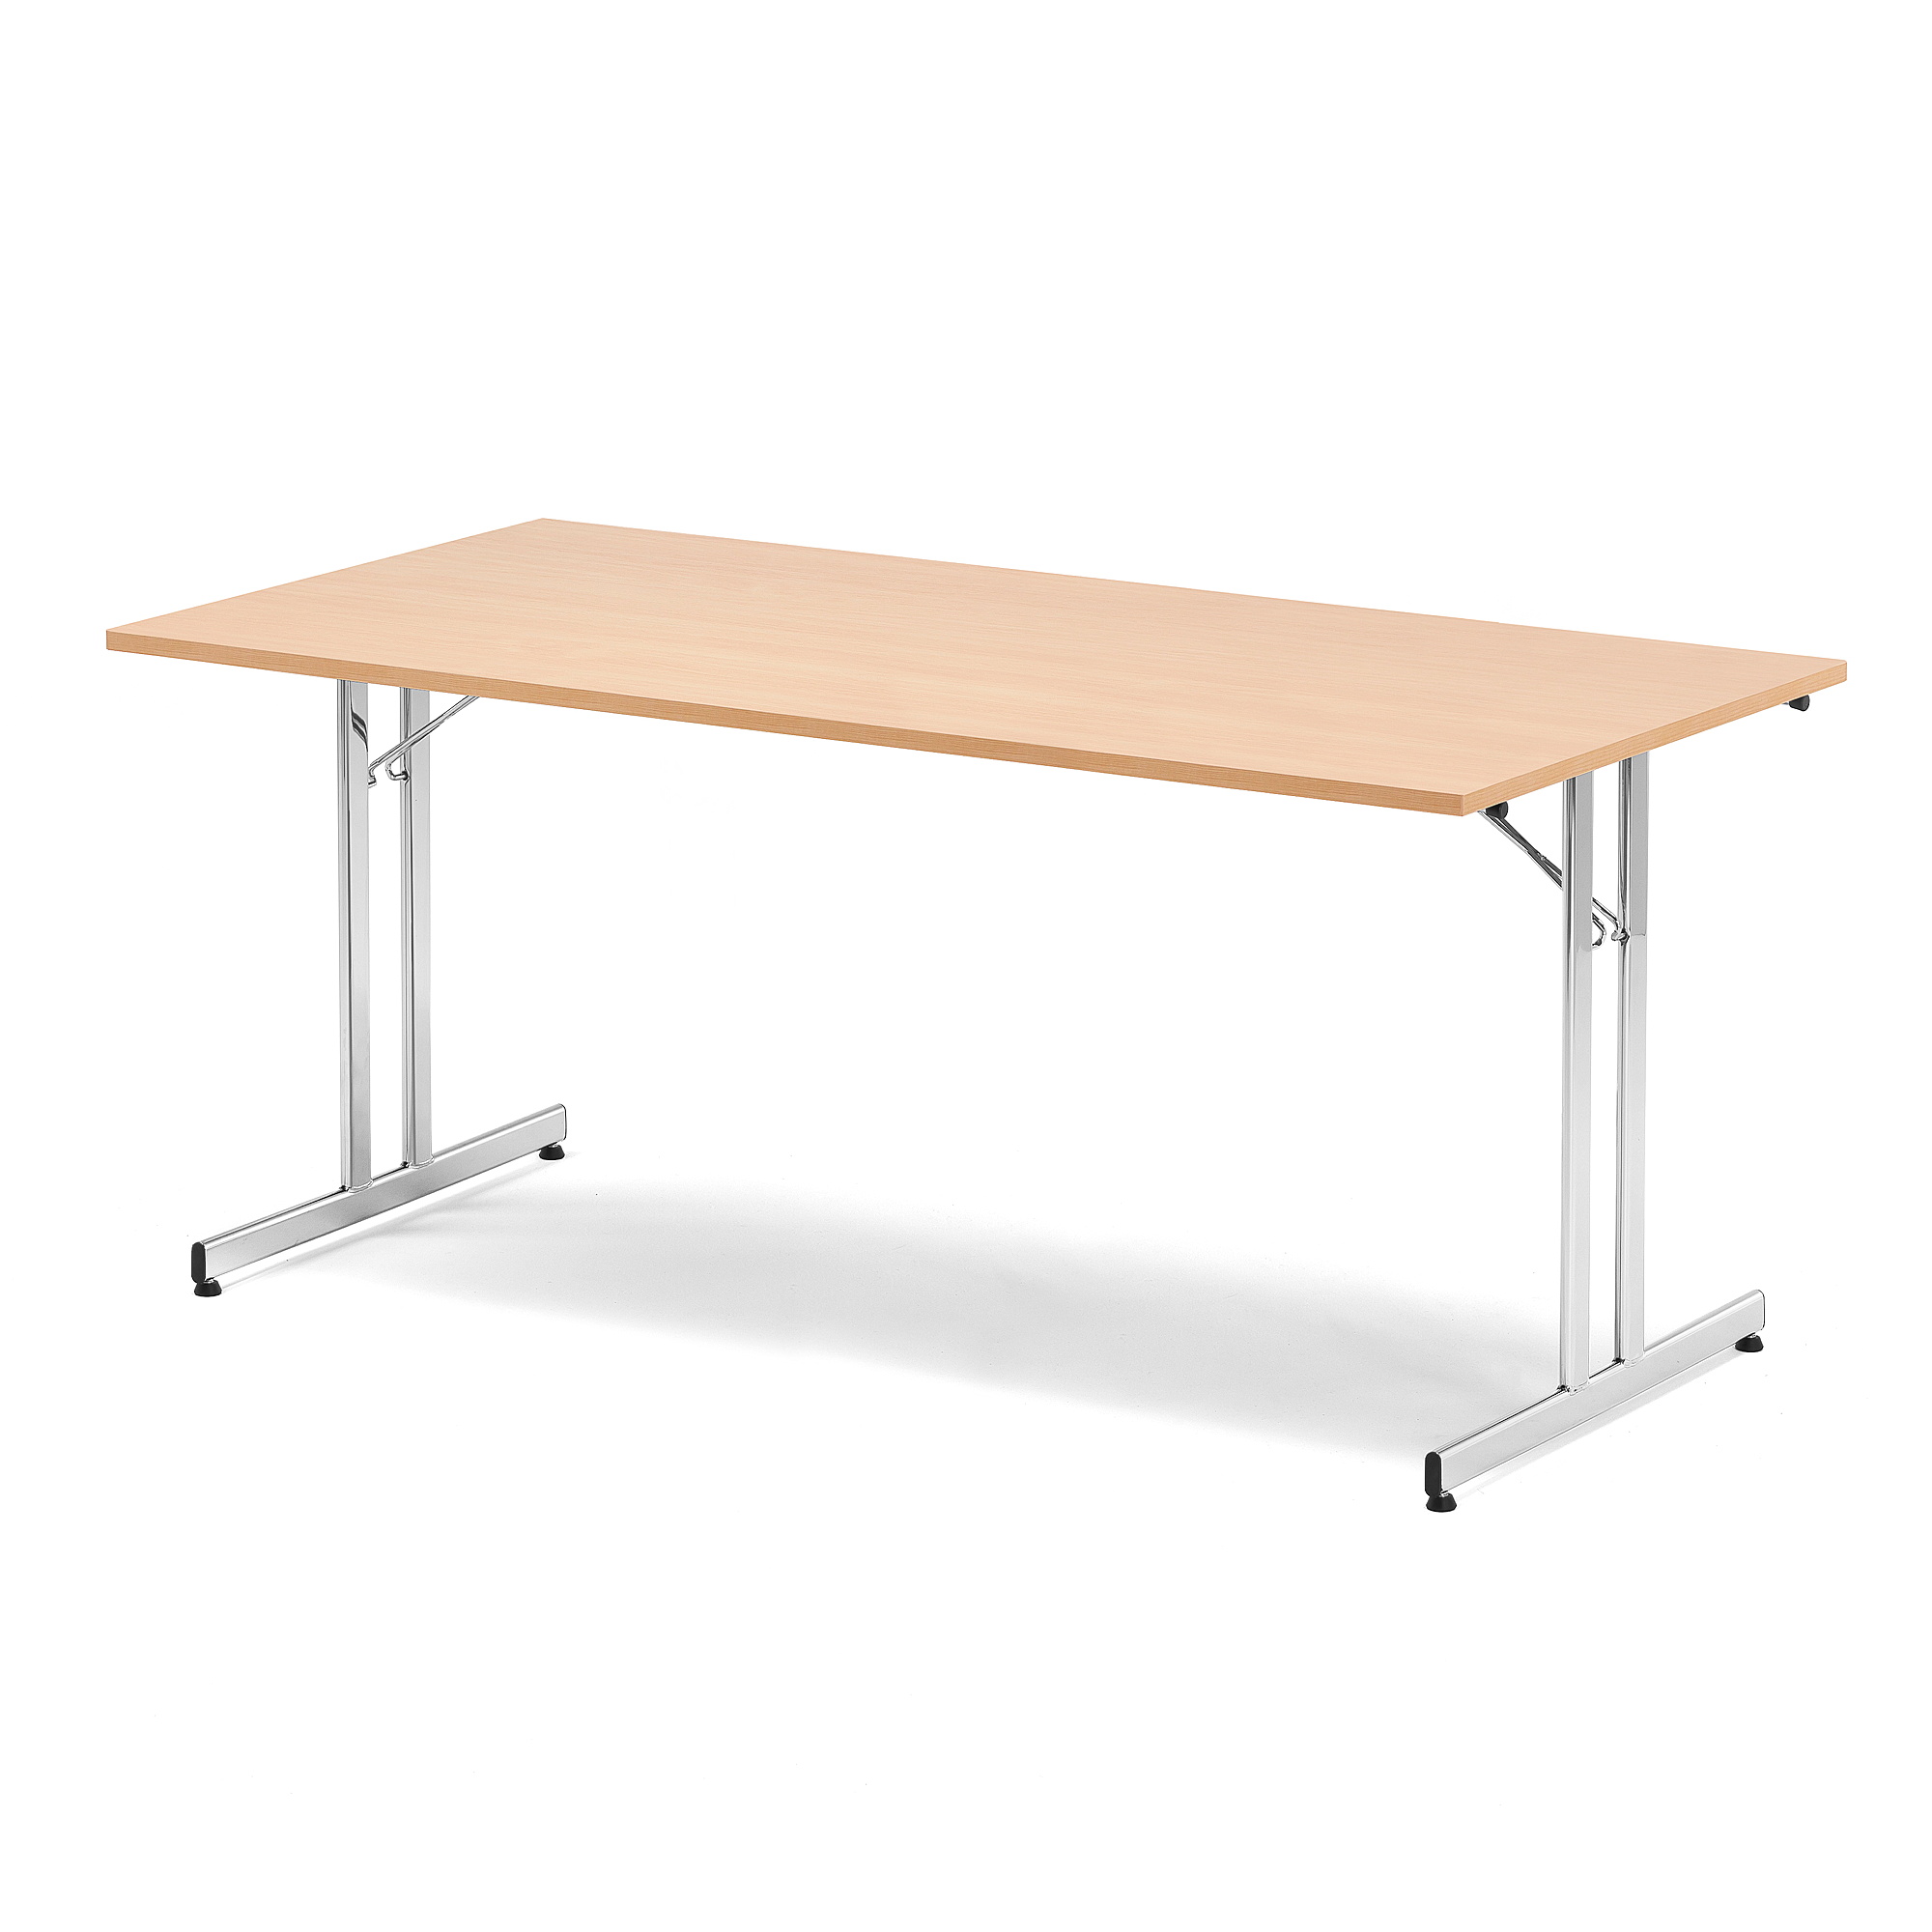 Skladací rokovací stôl EMILY, 1800x800 mm, bukový laminát/chróm